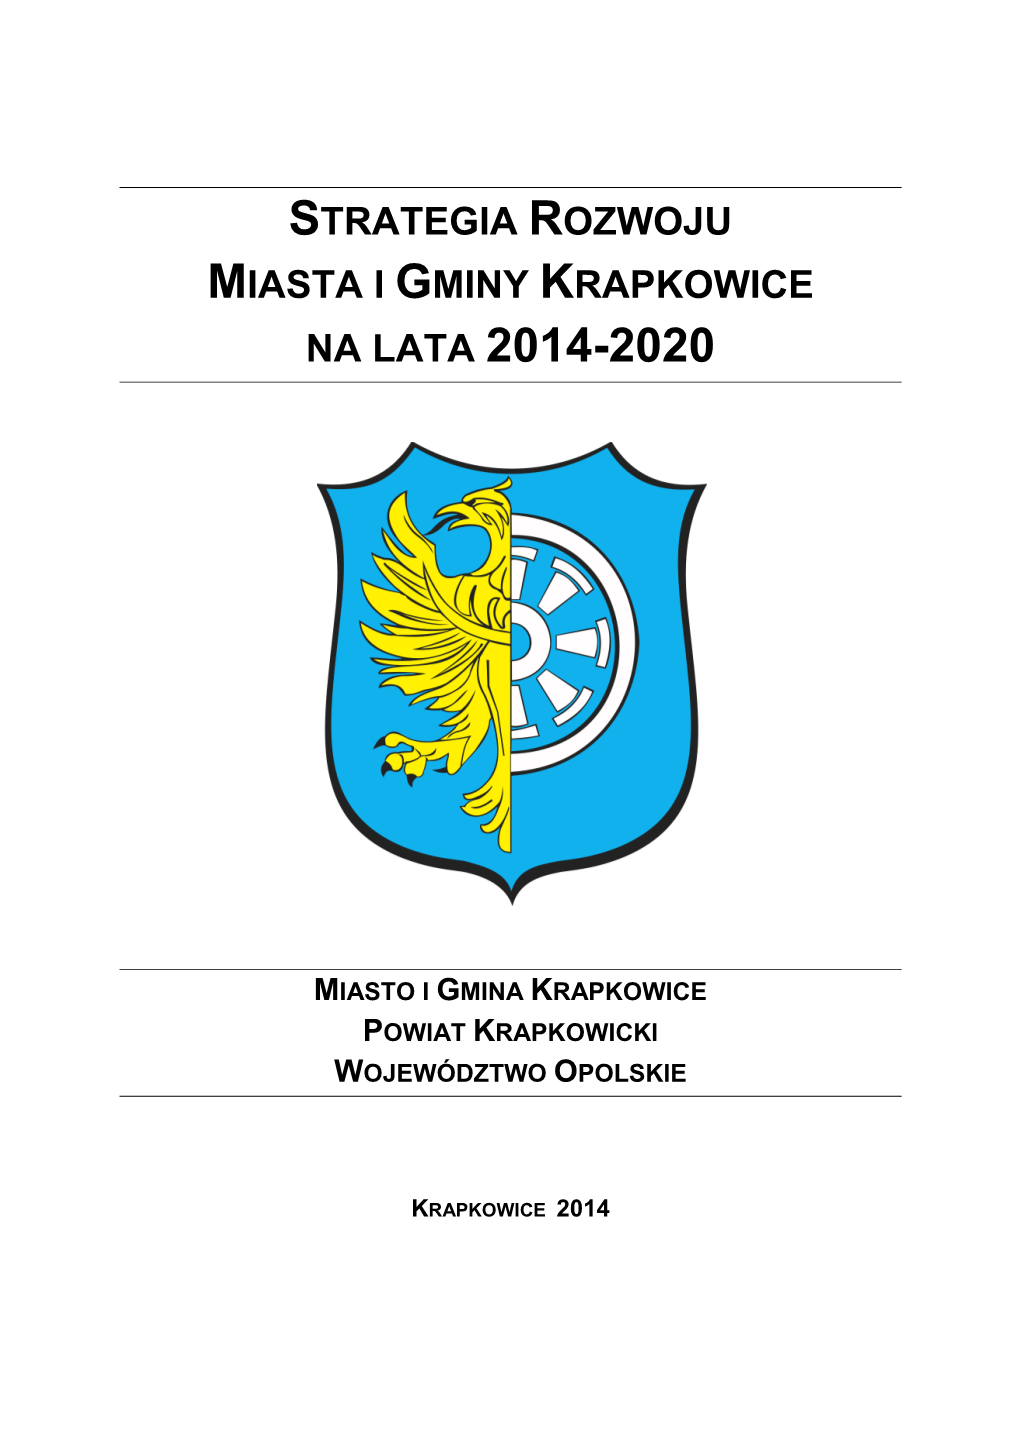 Na Lata 2014-2020